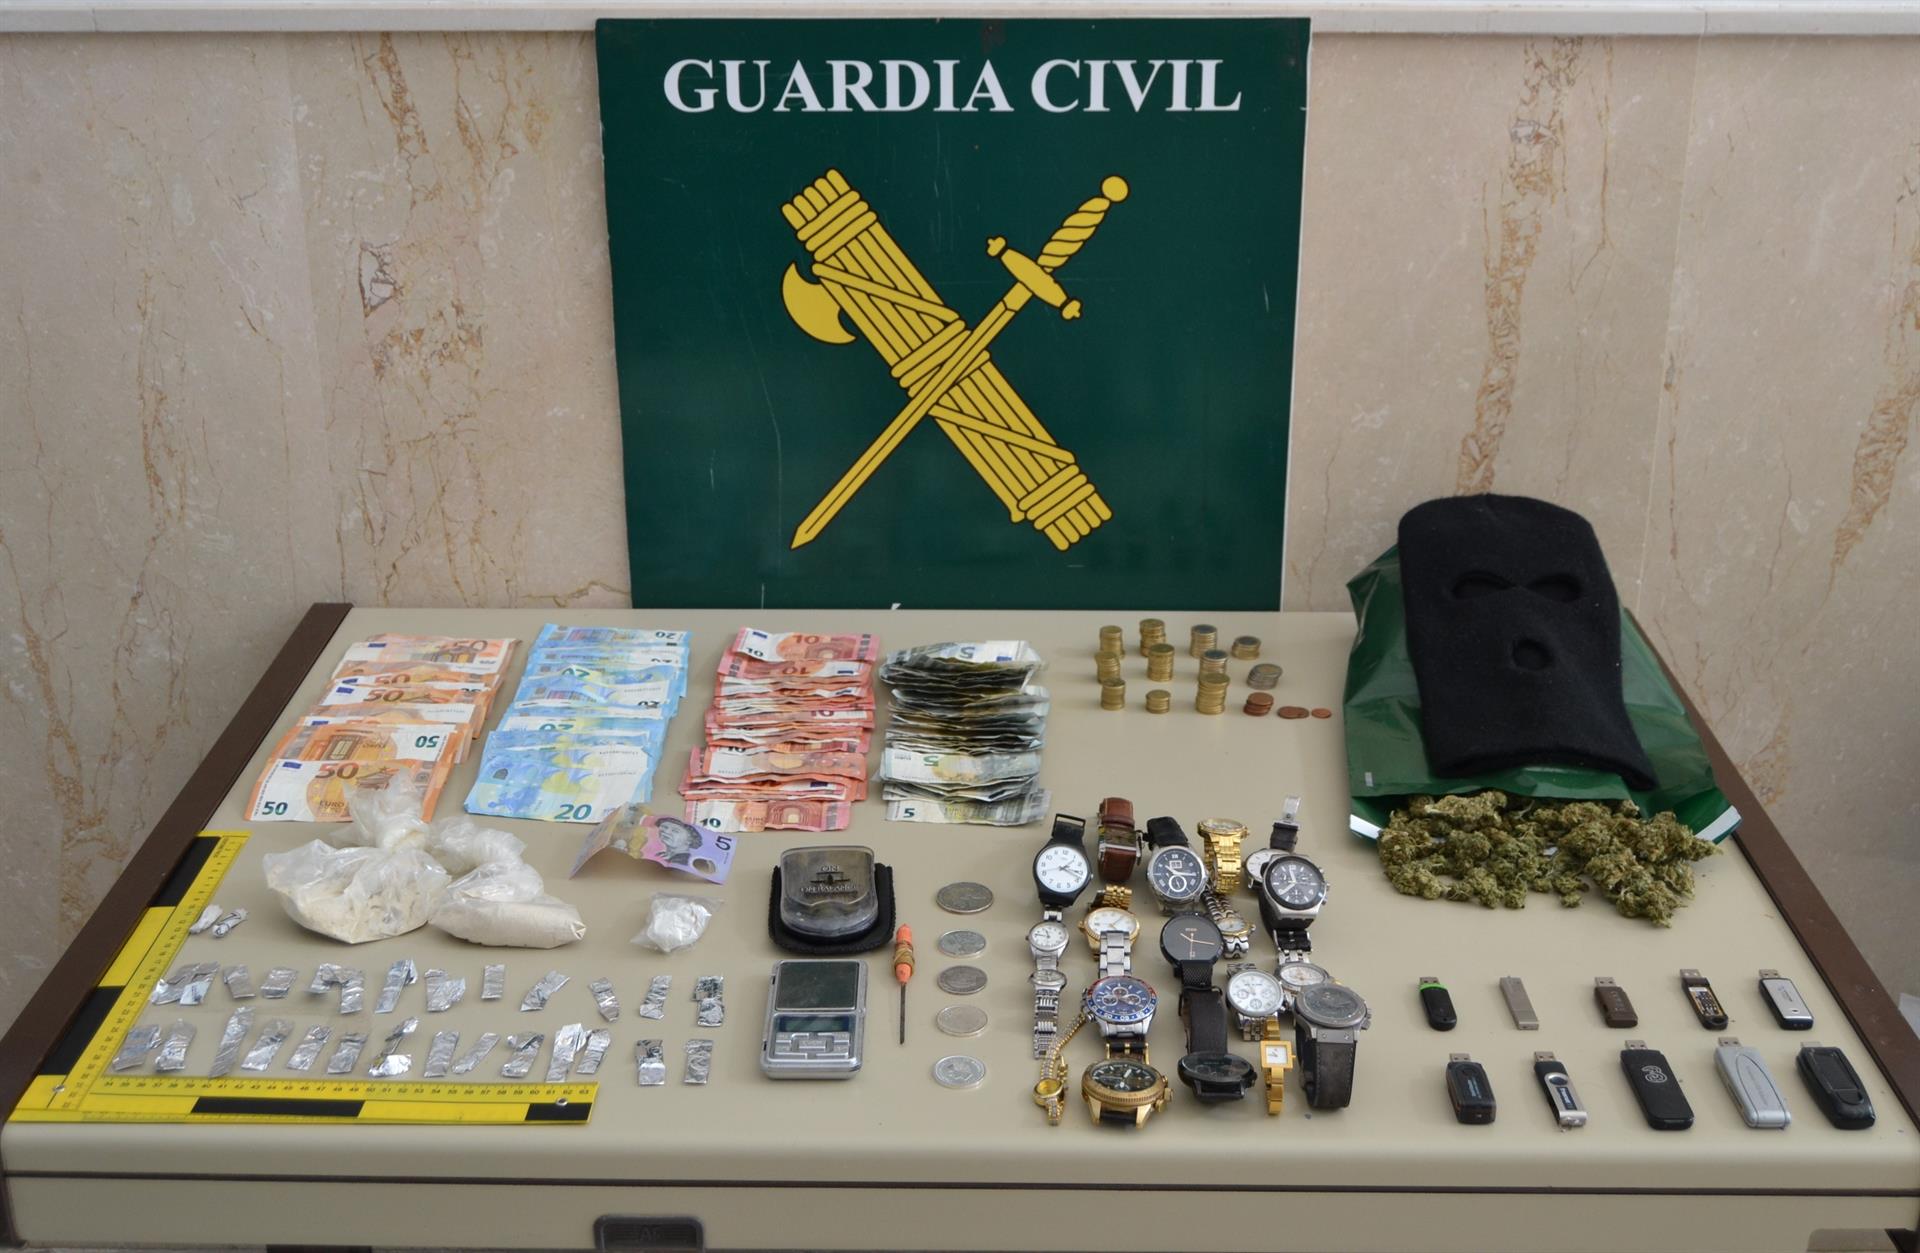 La Guardia Civil ha incautado todo tipo de artilugios para fabricar y preparar la droga, así como varios objetos robados.